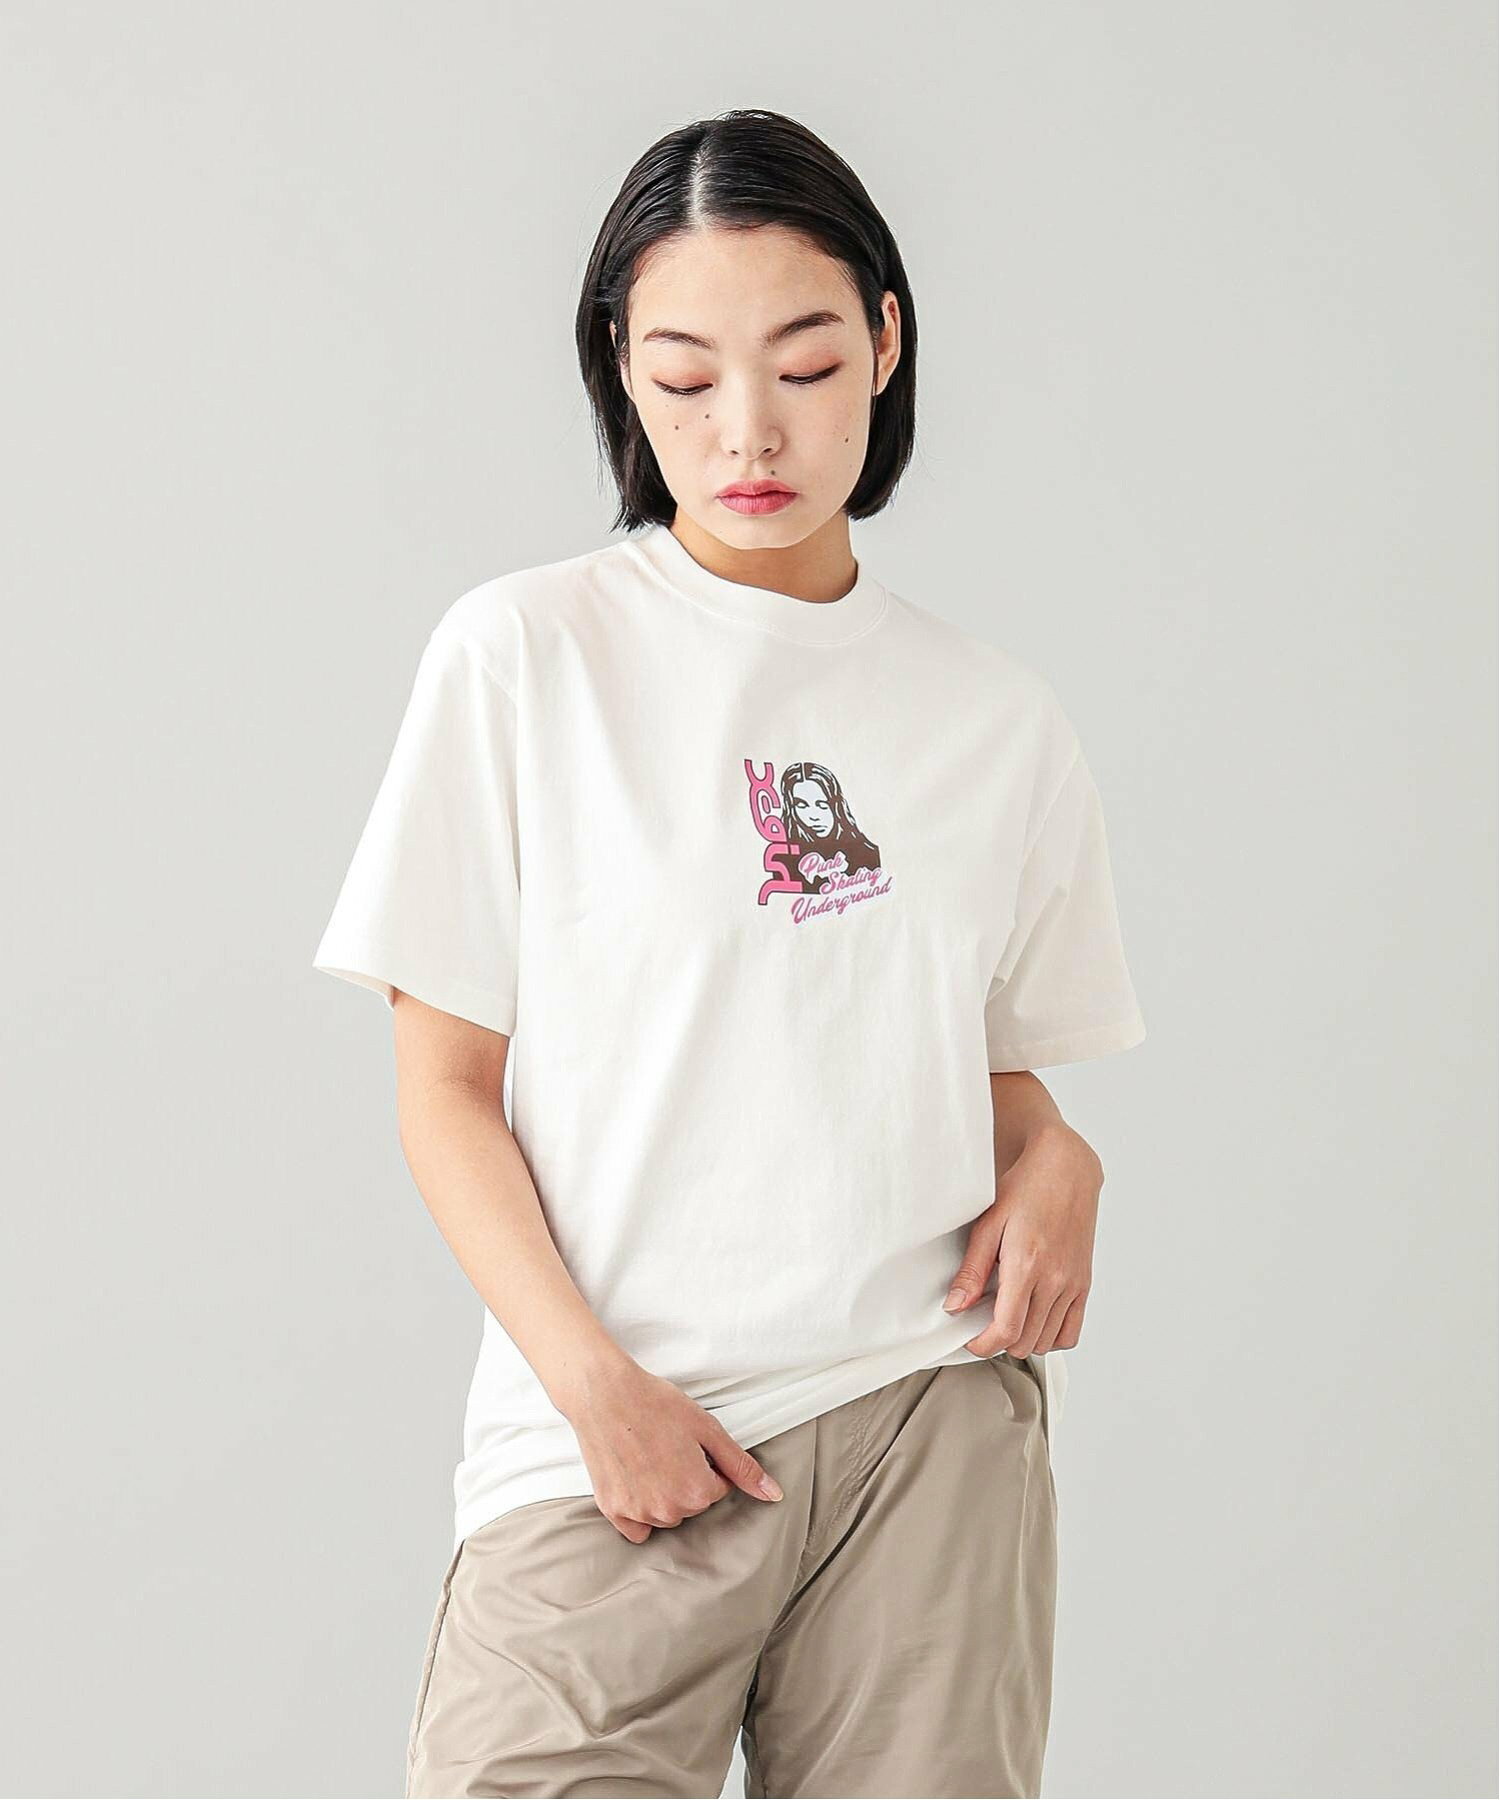 FACE AND LOGO S/S TEE X-girl  Tシャツ X-girl